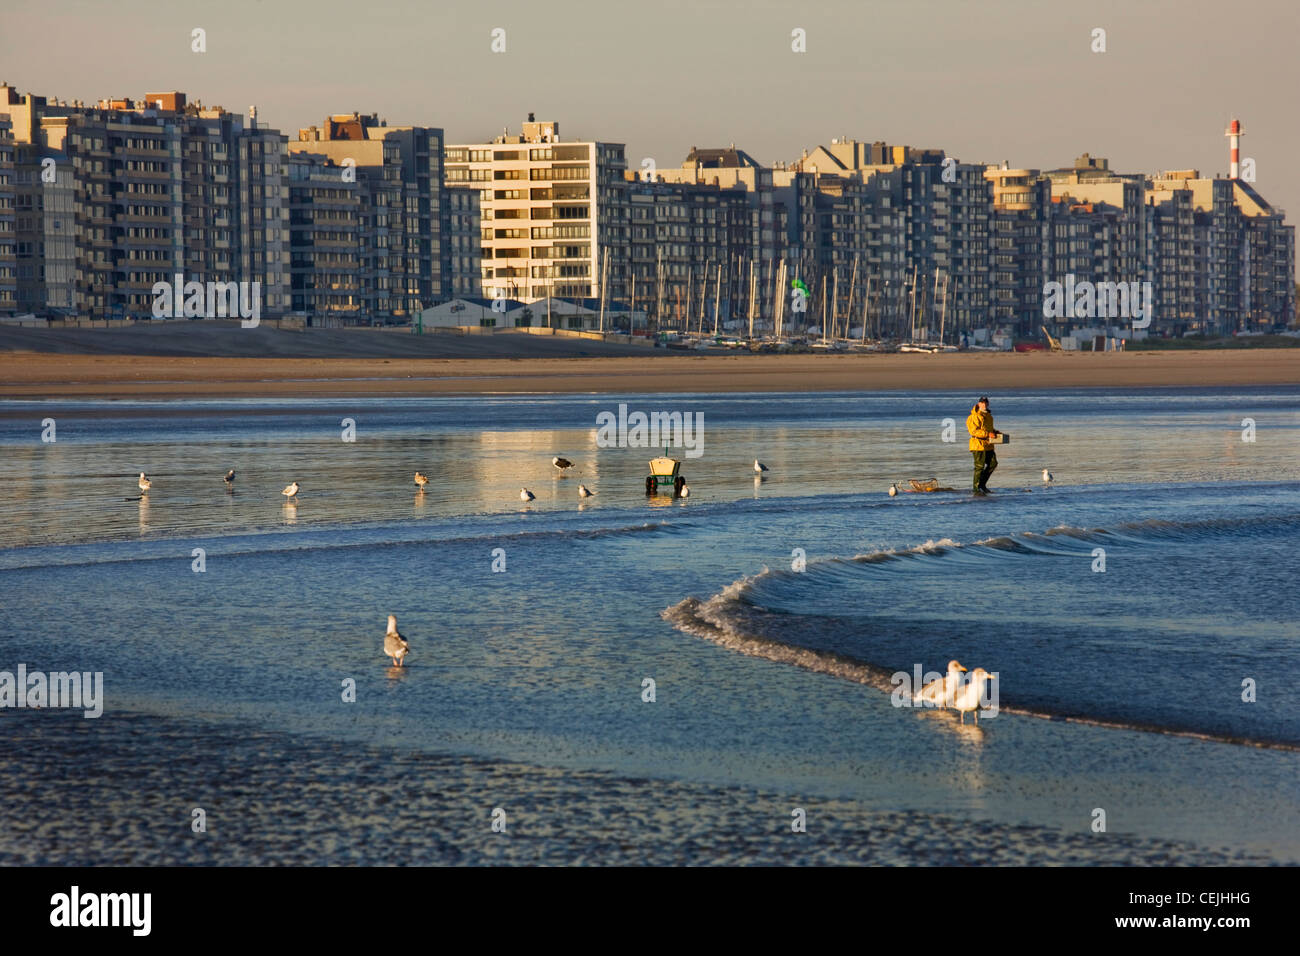 Desarrollo urbano belga mostrando apartamentos en la costa del Mar del Norte en Knokke-Heist, Bélgica Foto de stock